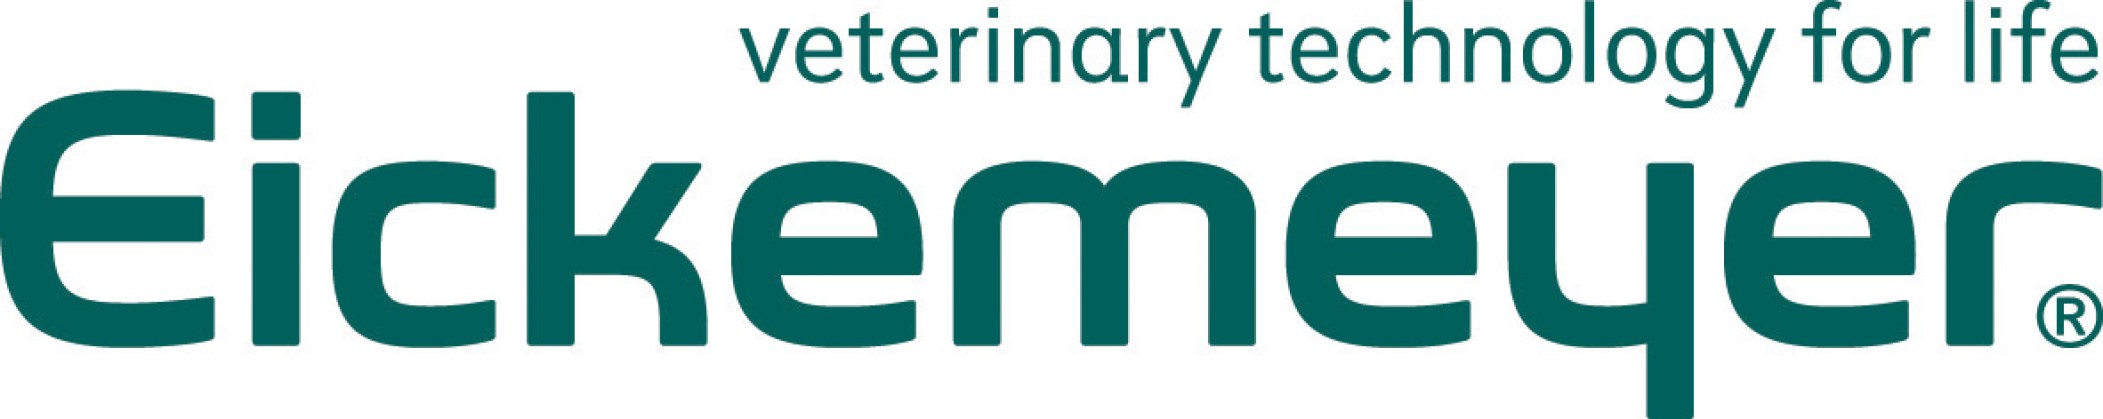 Eickemeyer-Logo1